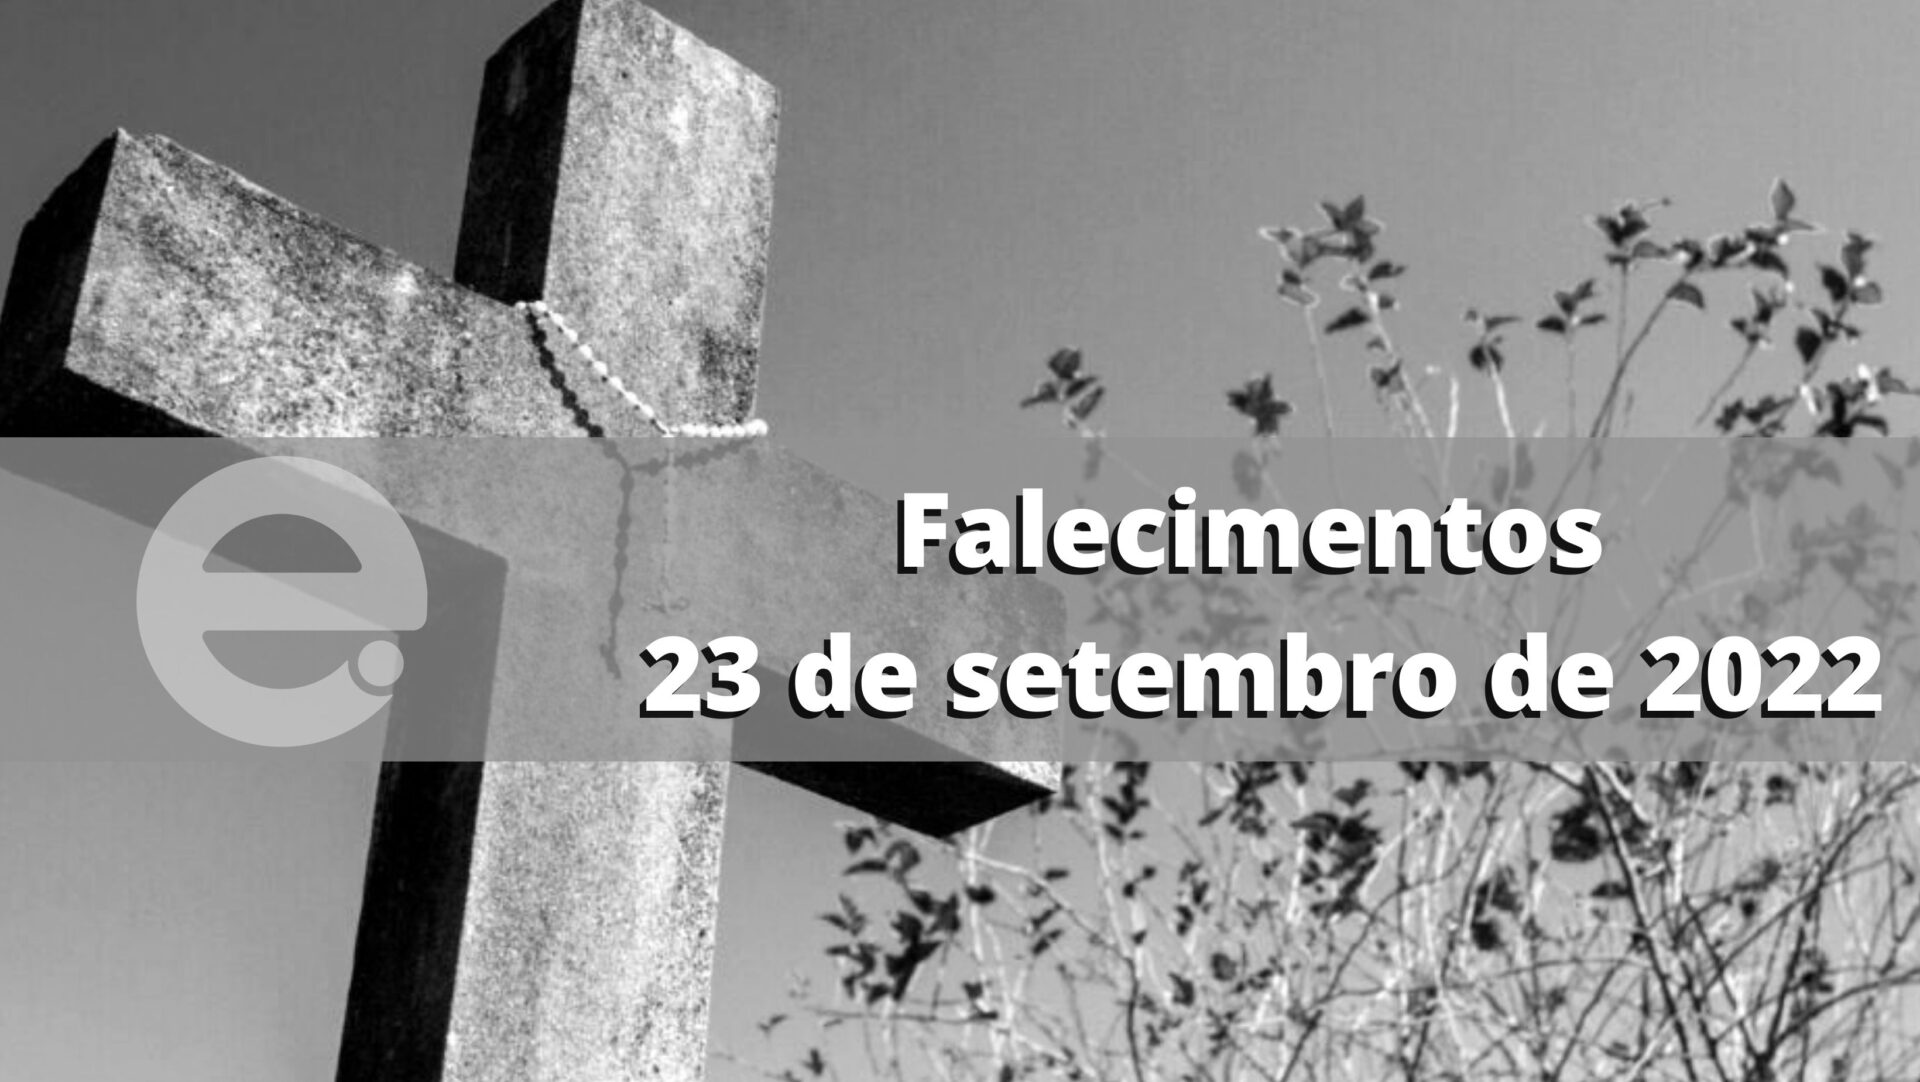 Confira os falecimentos desta sexta-feira, 23 de setembro de 2022, em Limeira